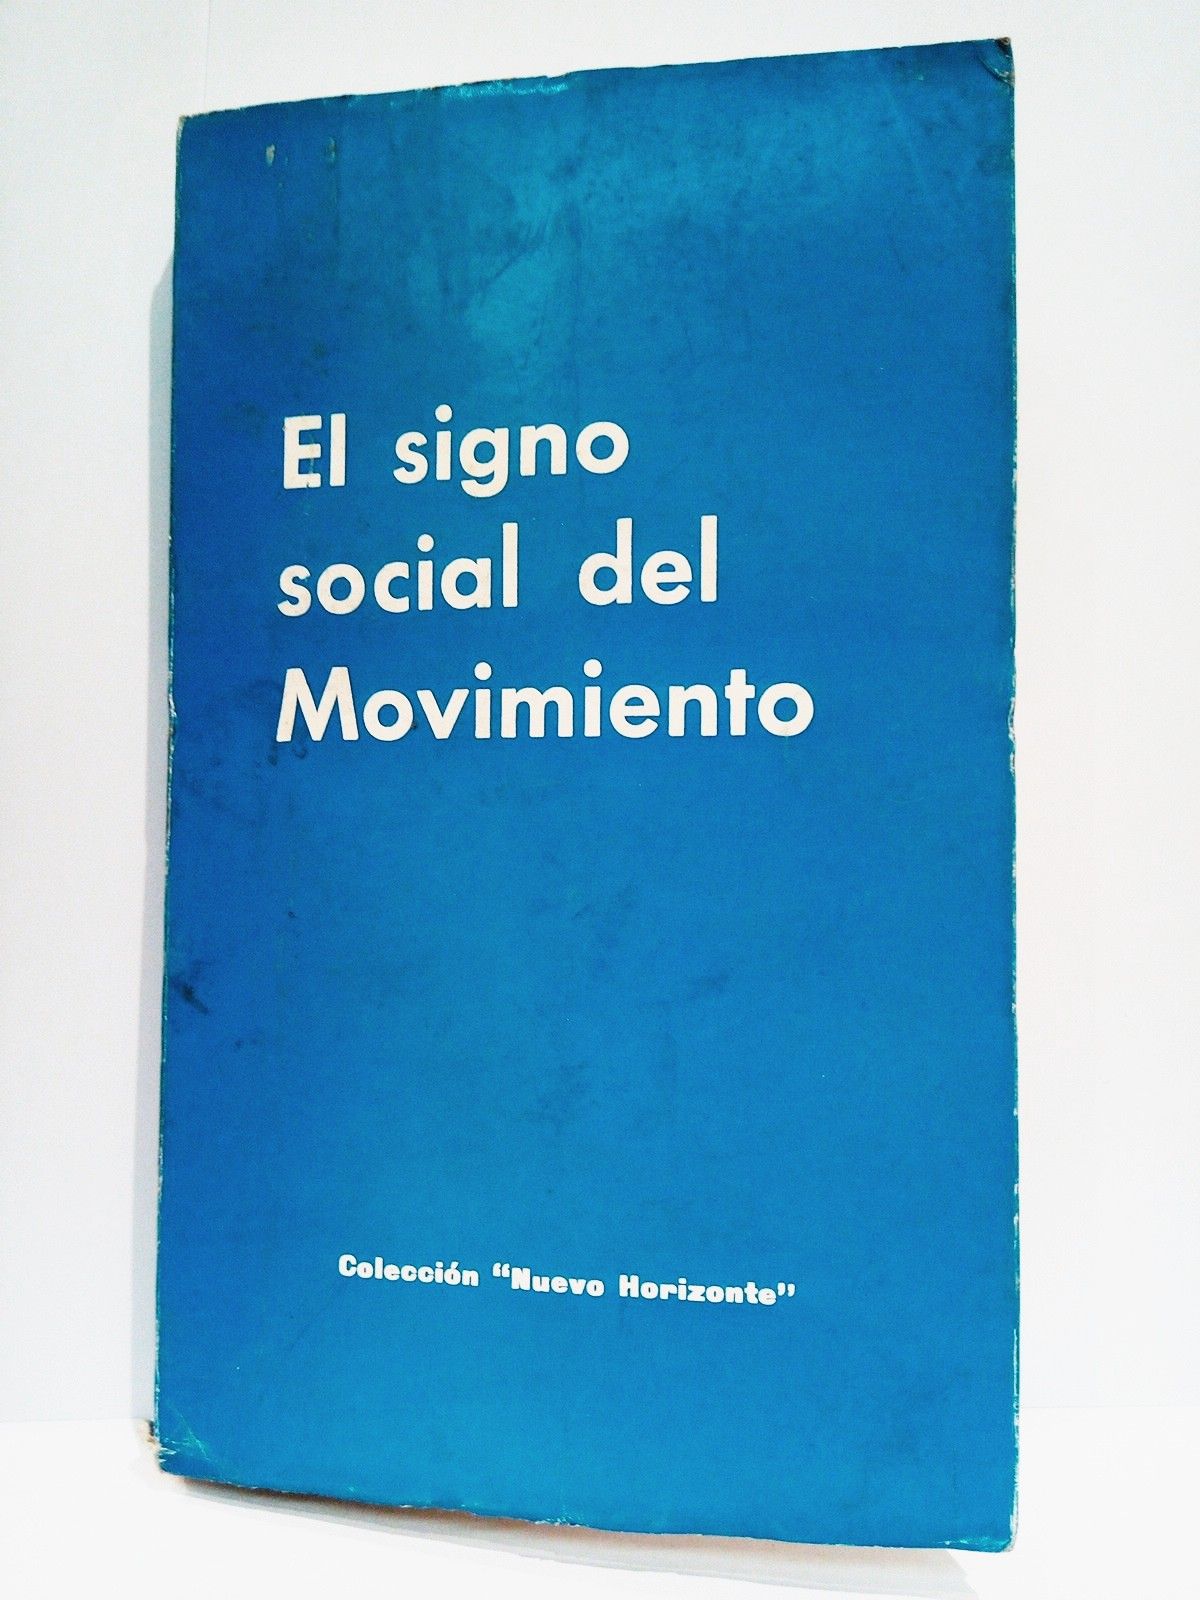 EDICIONES DEL MOVIMIENTO - El signo social del Movimiento